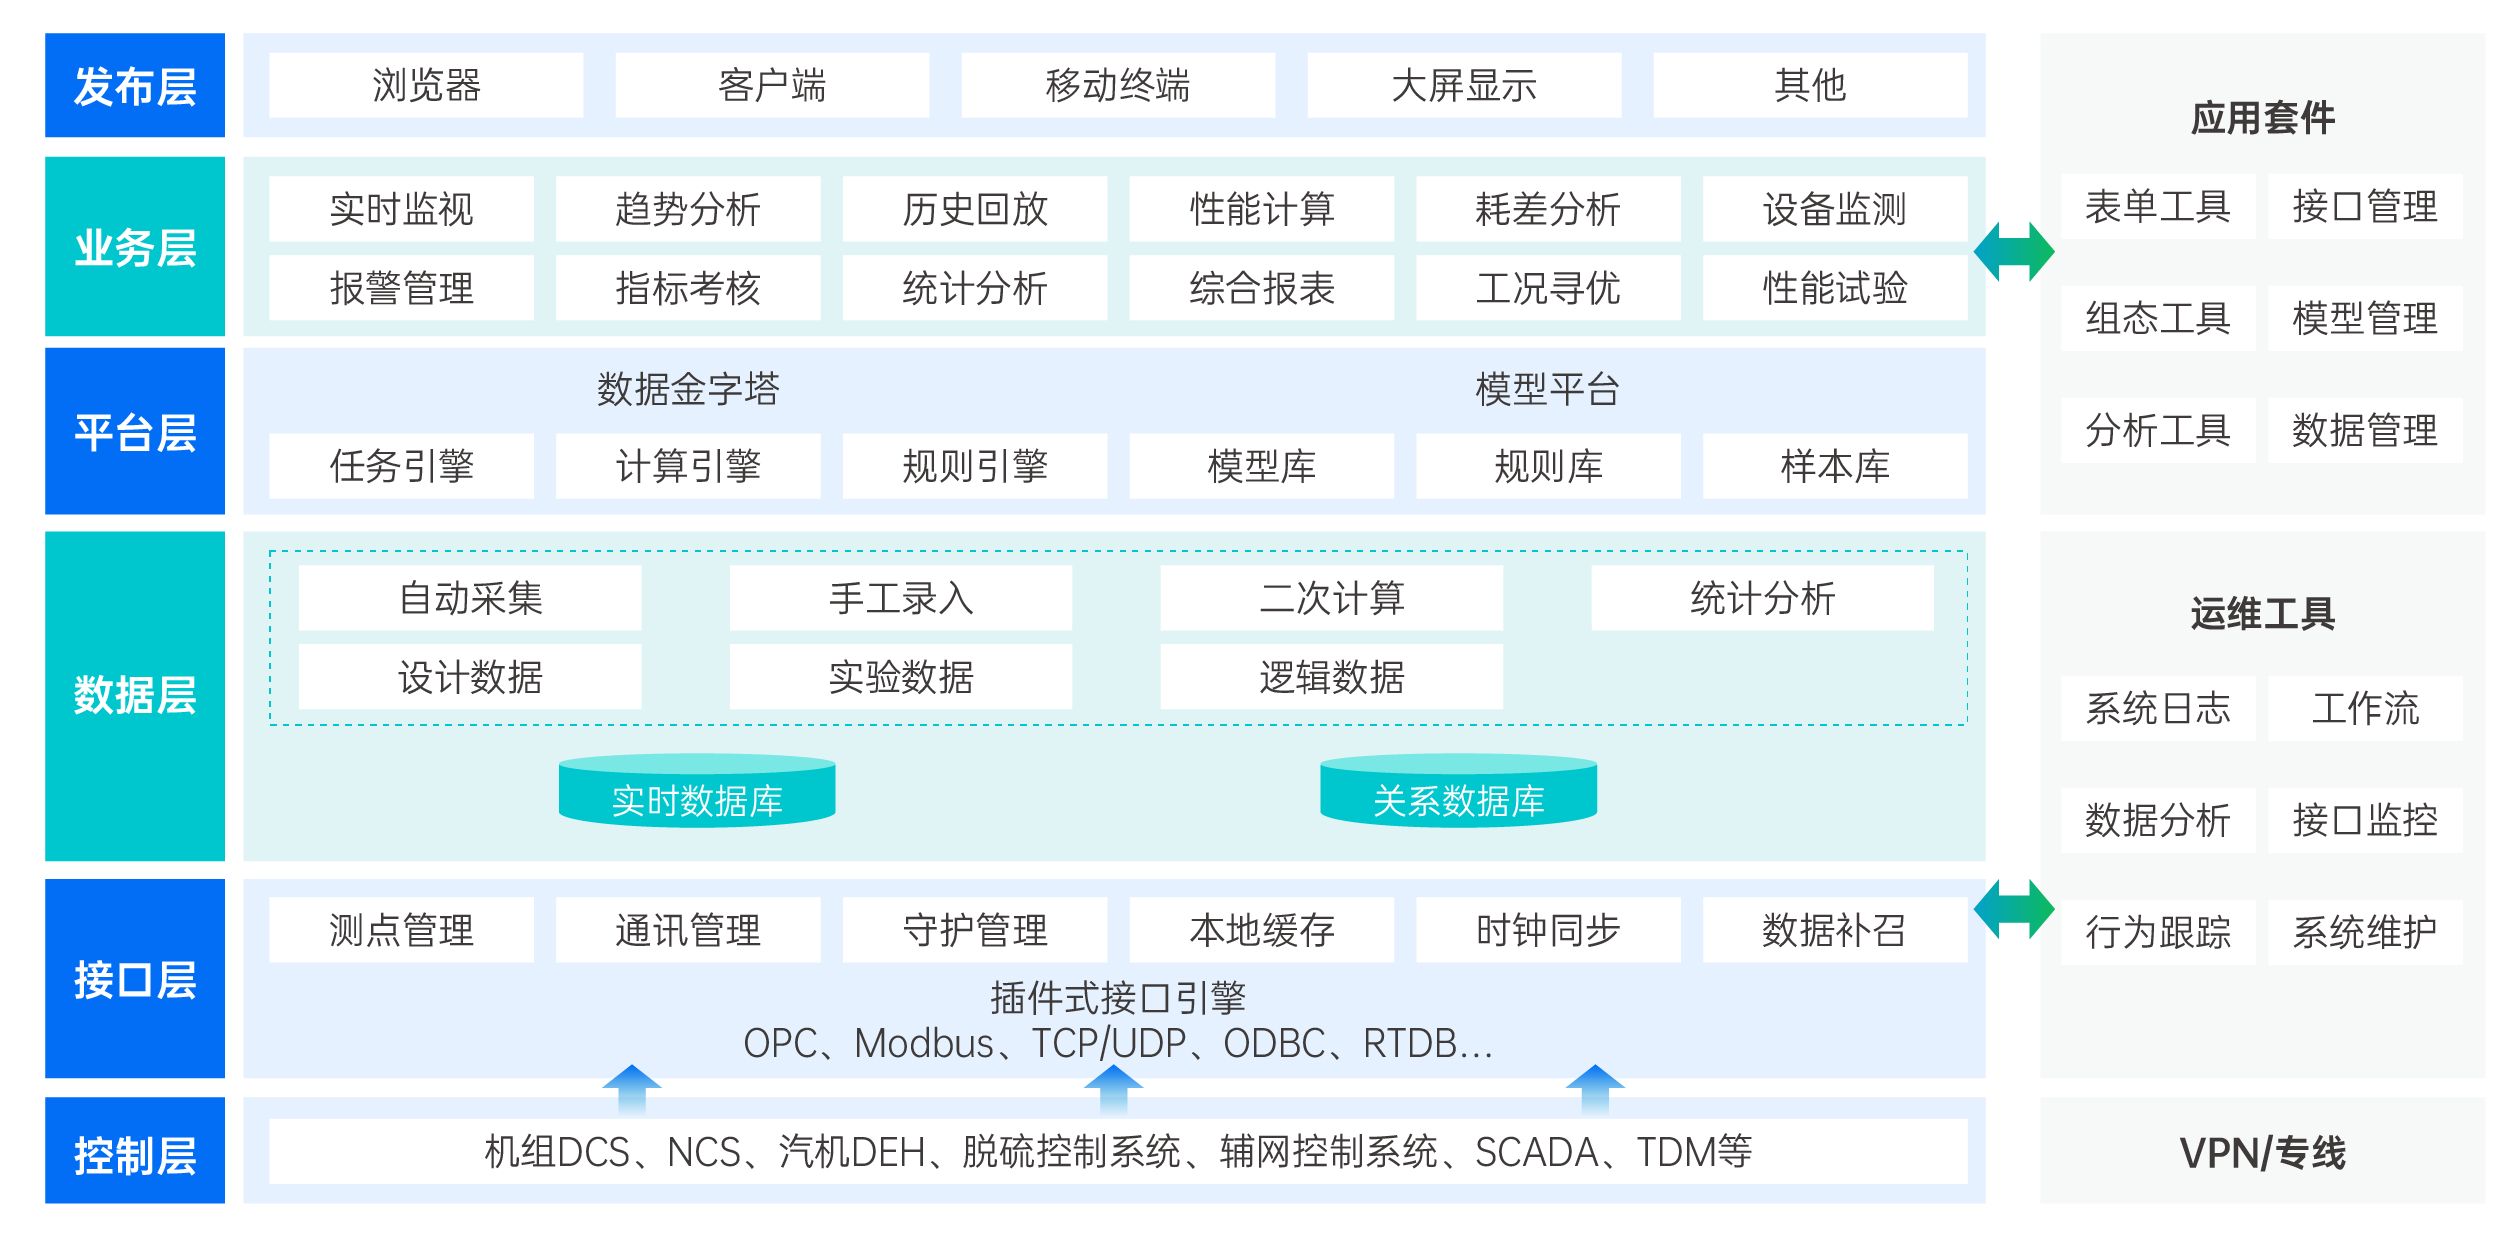 2022-11官网配图-产品服务_画板 1 副本 2.png